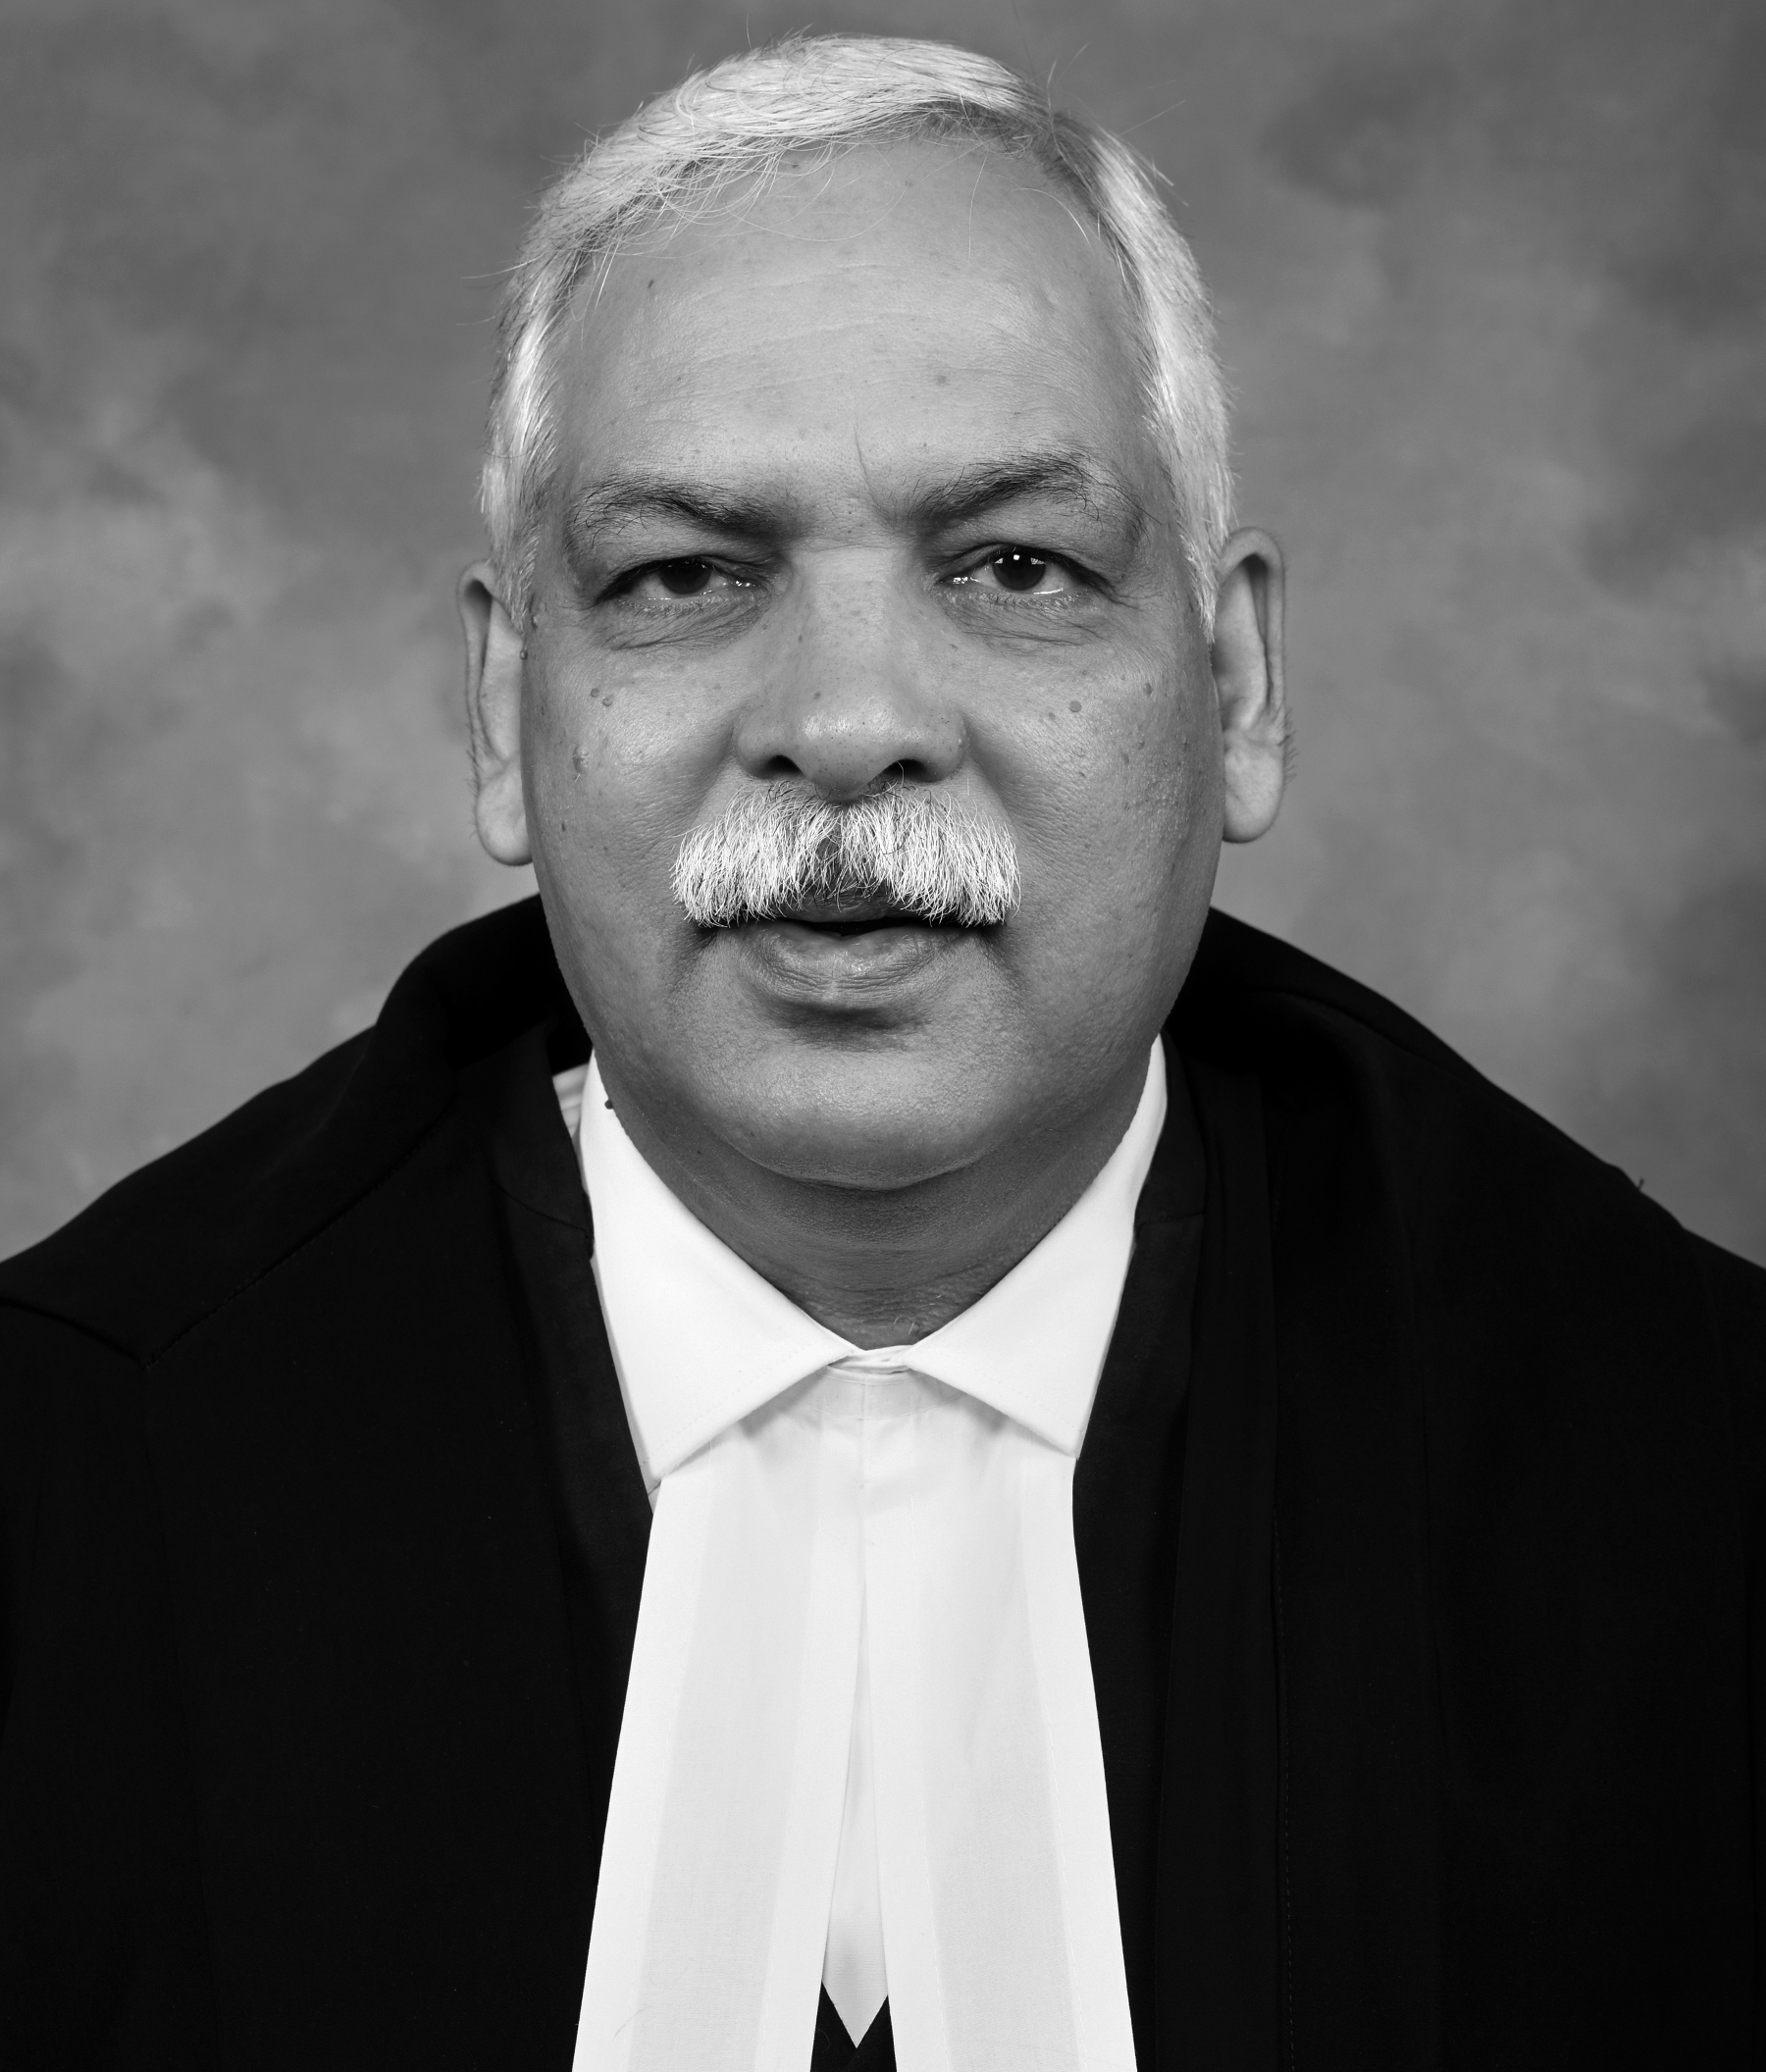 सन्माननीय श्री. देवेंद्र कुमार उपाध्याय, मुख्य न्यायमुर्ती उच्च न्यायालय, मुबंई